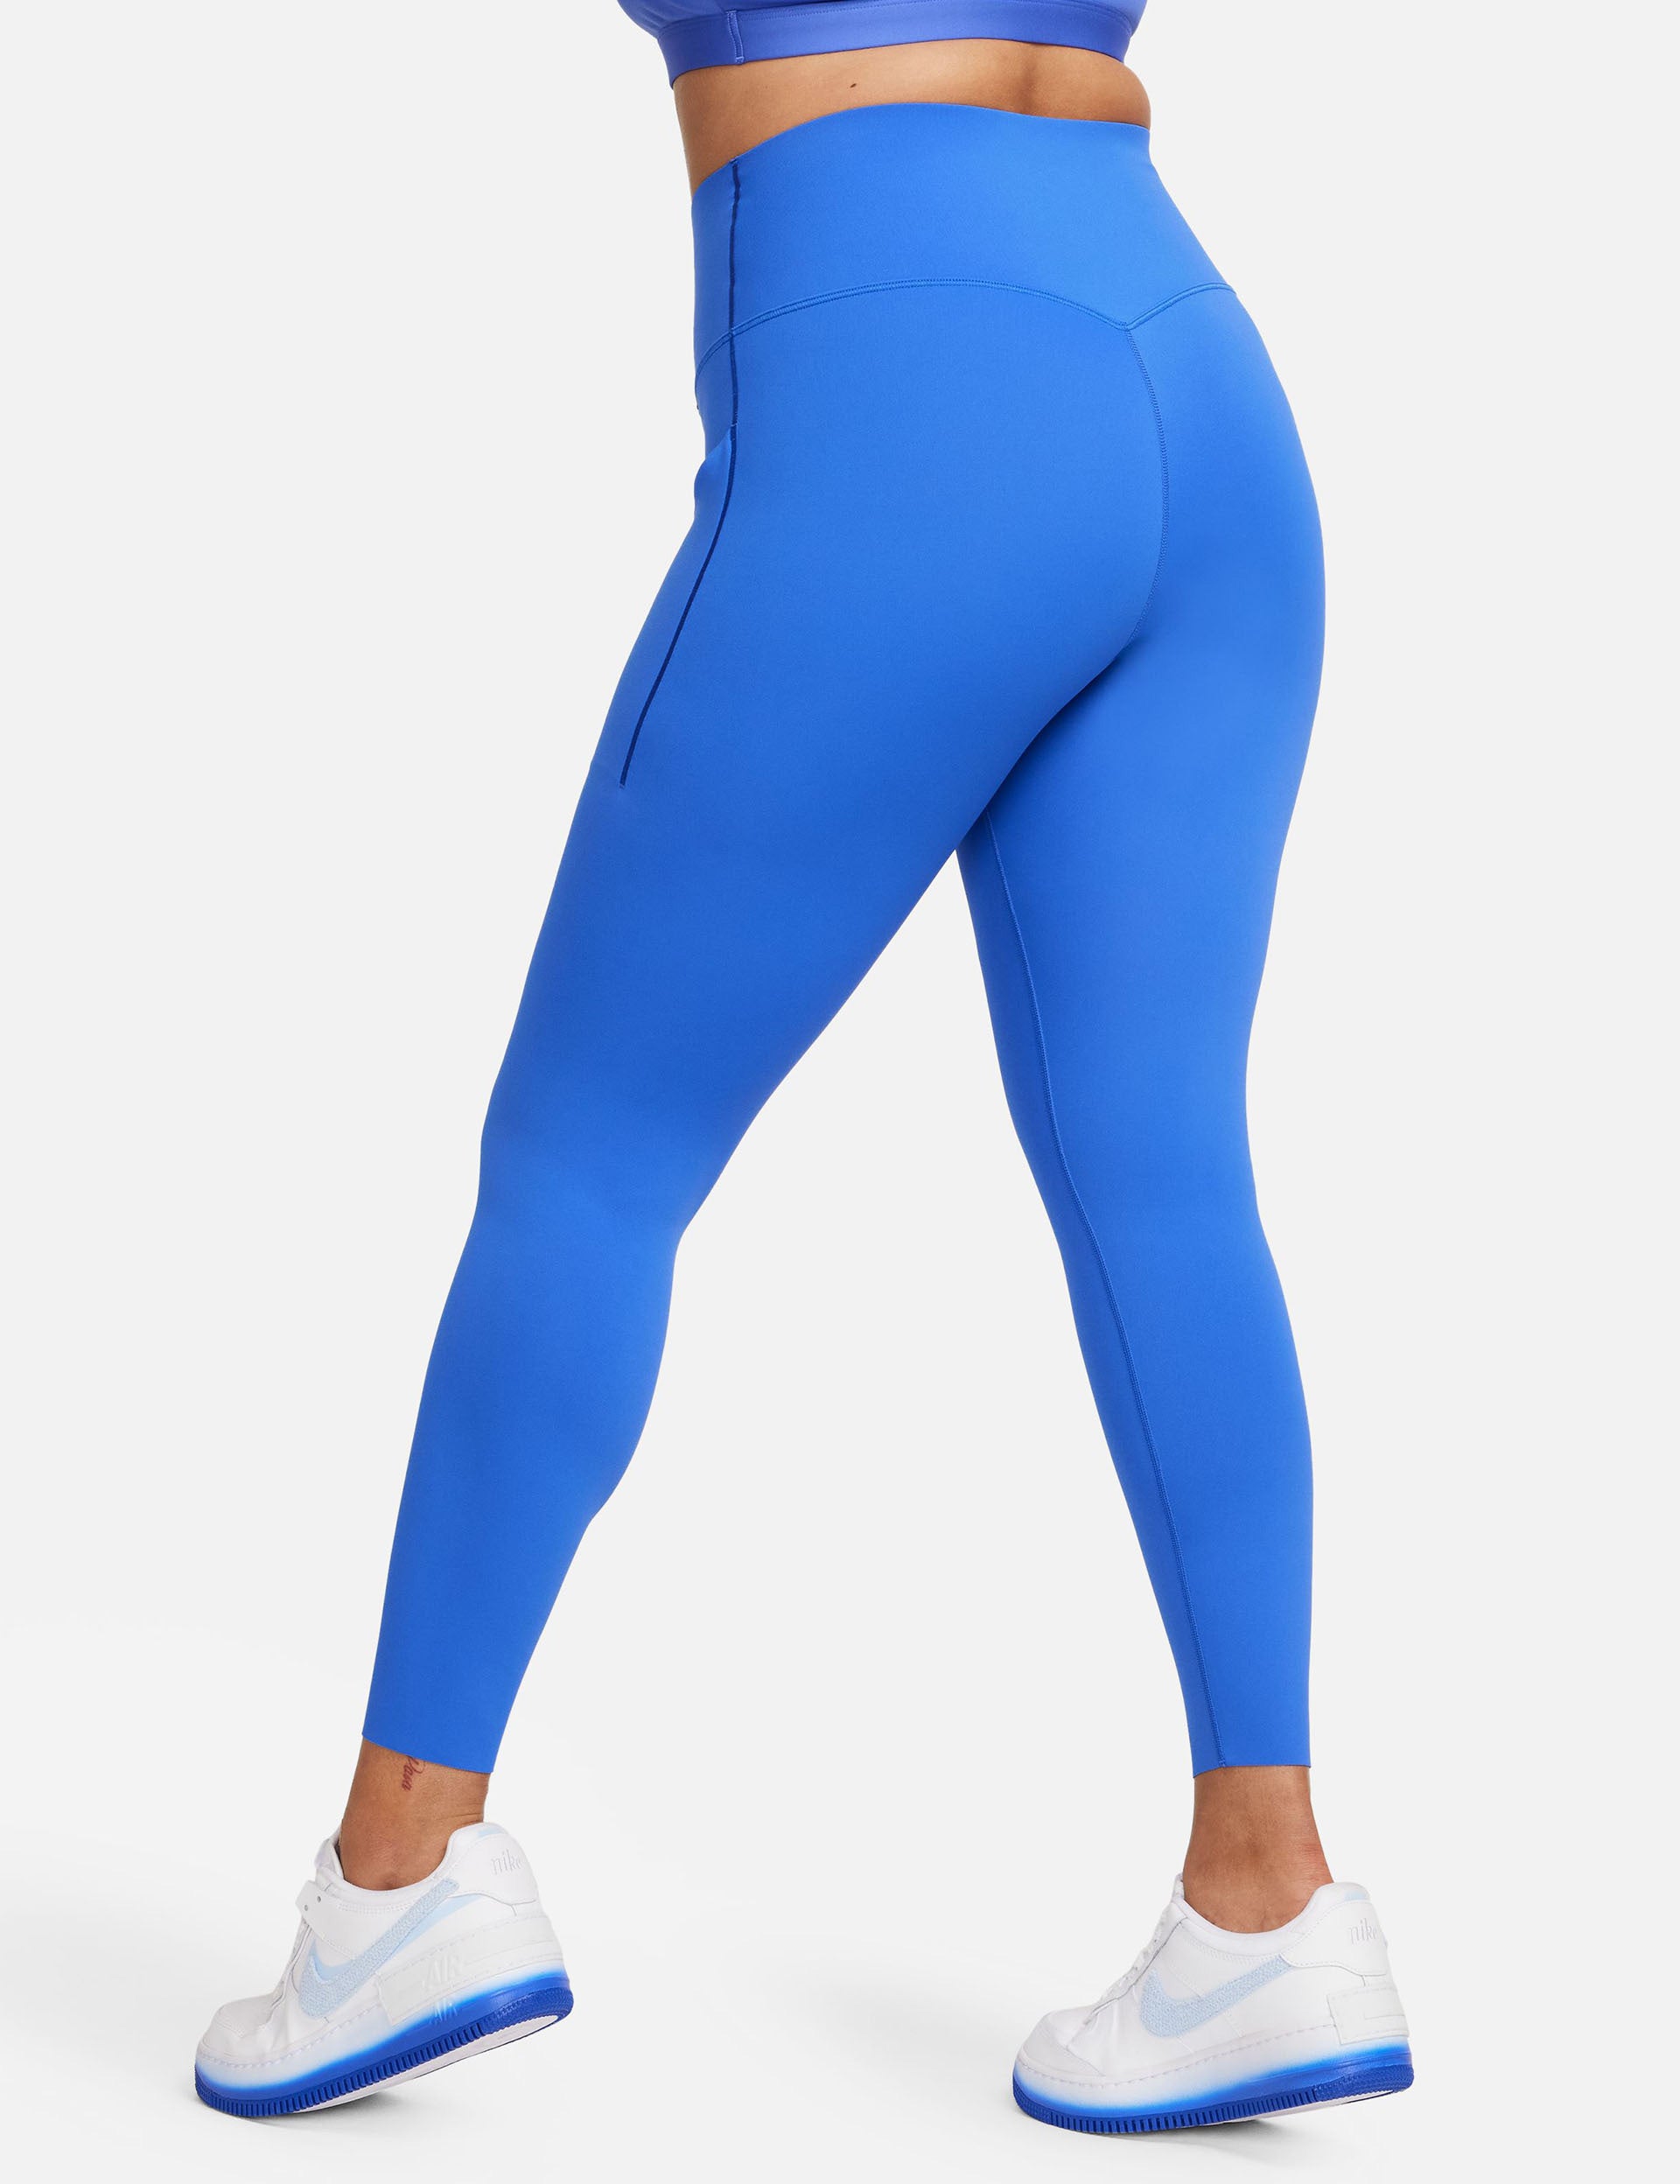 Nike Womens Universa 7/8 Leggings - Blue